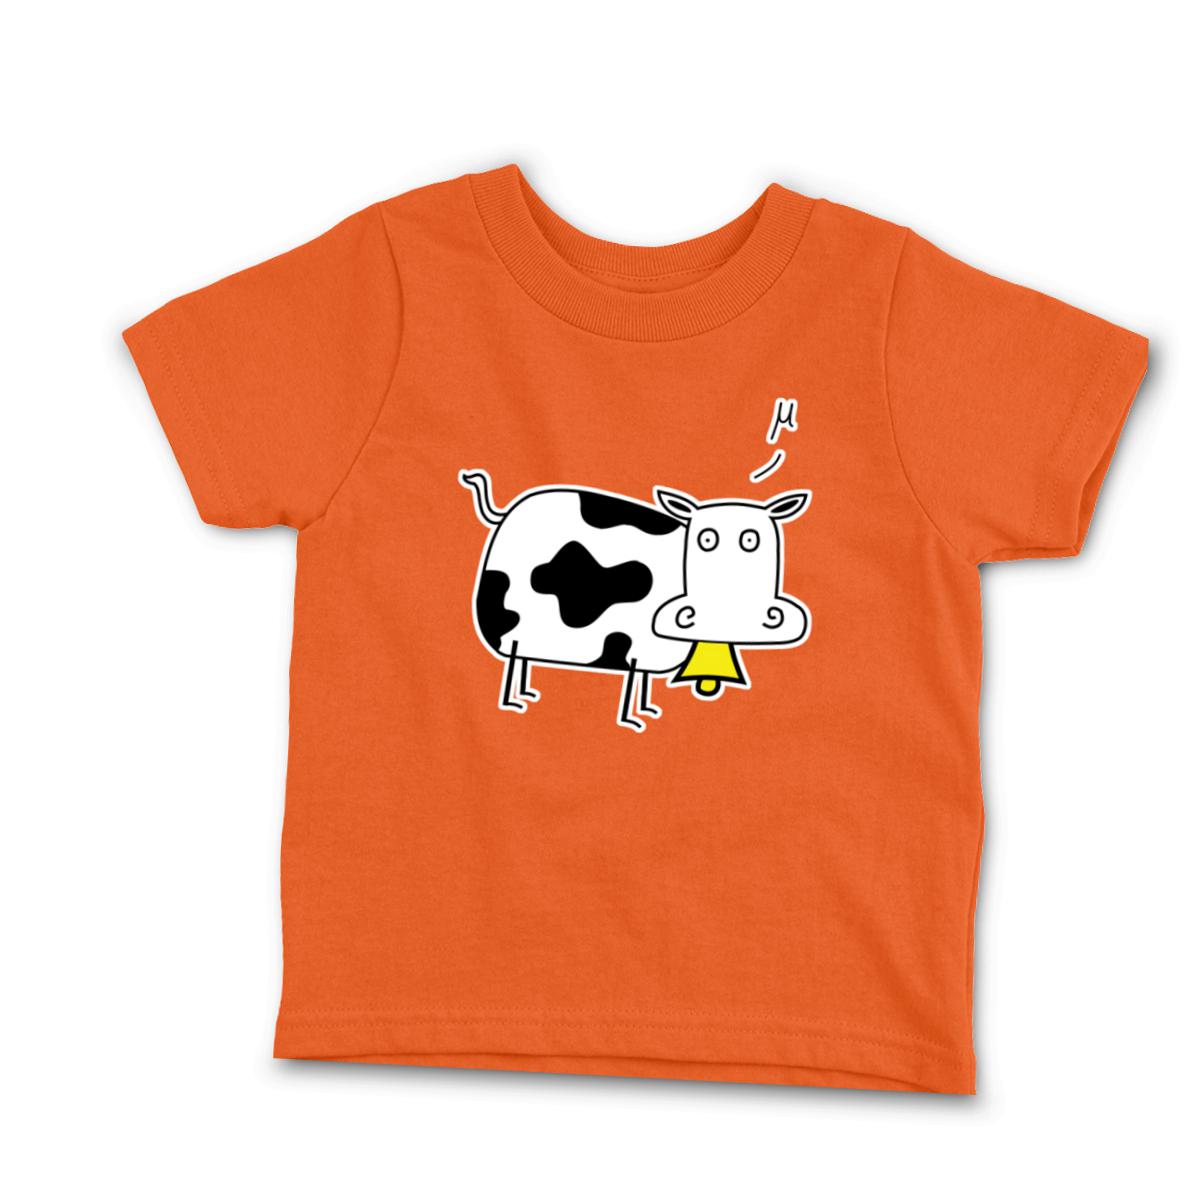 Mu Cow Toddler Tee 4T orange